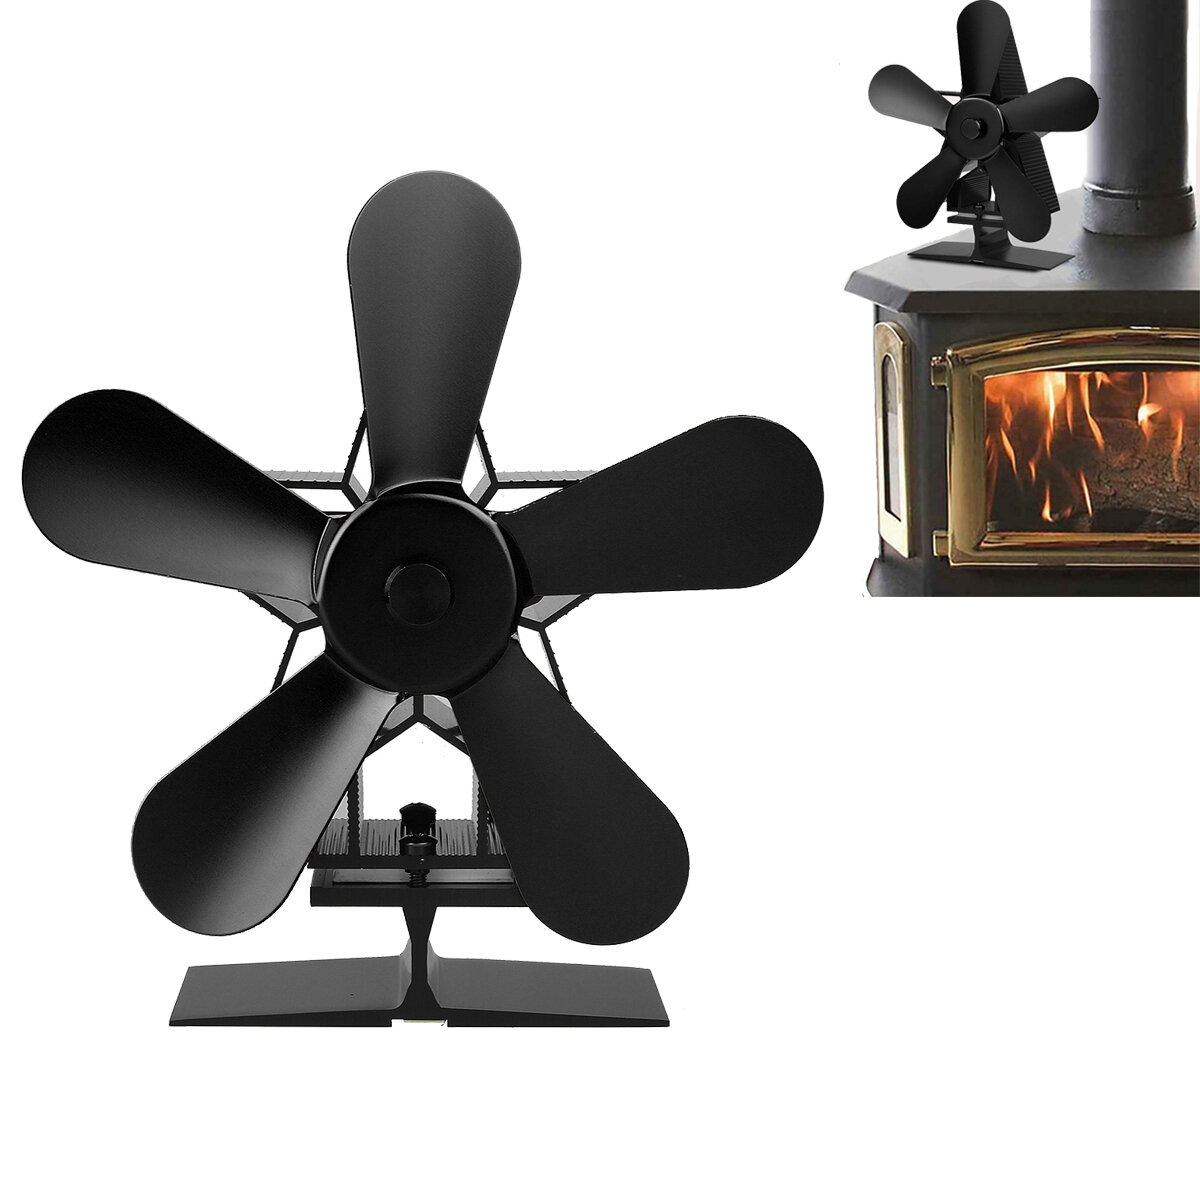 暖炉ファンの5枚羽根1350RPM、冬に家を暖めるためにエネルギーを節約する熱動力ファン。この熱ファンは素晴らしいクリスマスプレゼントです。